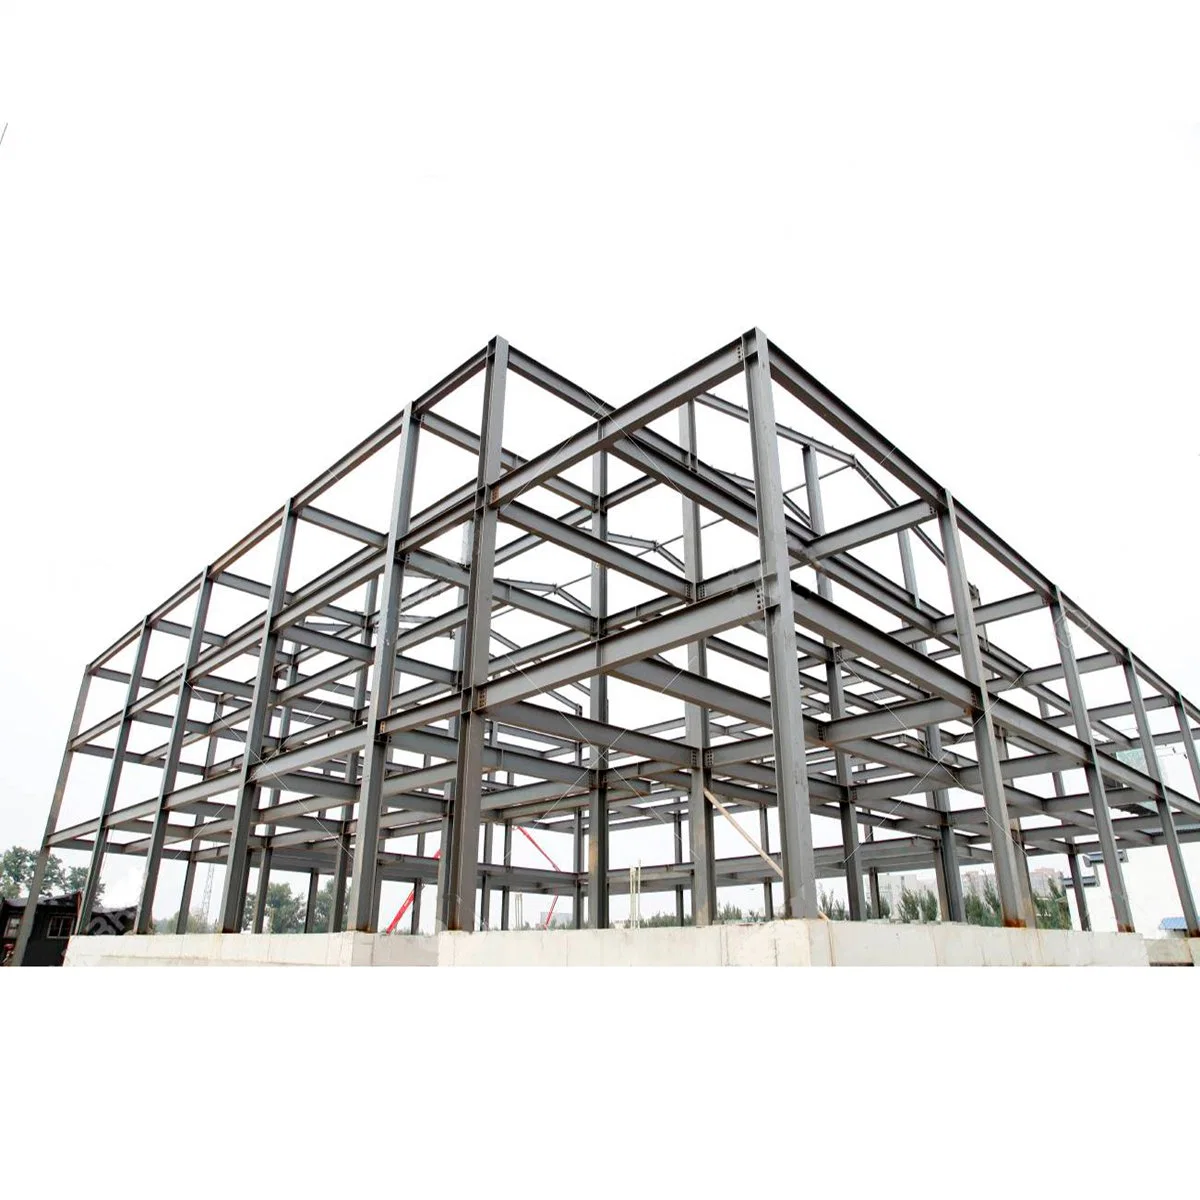 China barata Preabricated resistente al viento Hangar Almacén de materiales de construcción prefabricados de estructura de acero